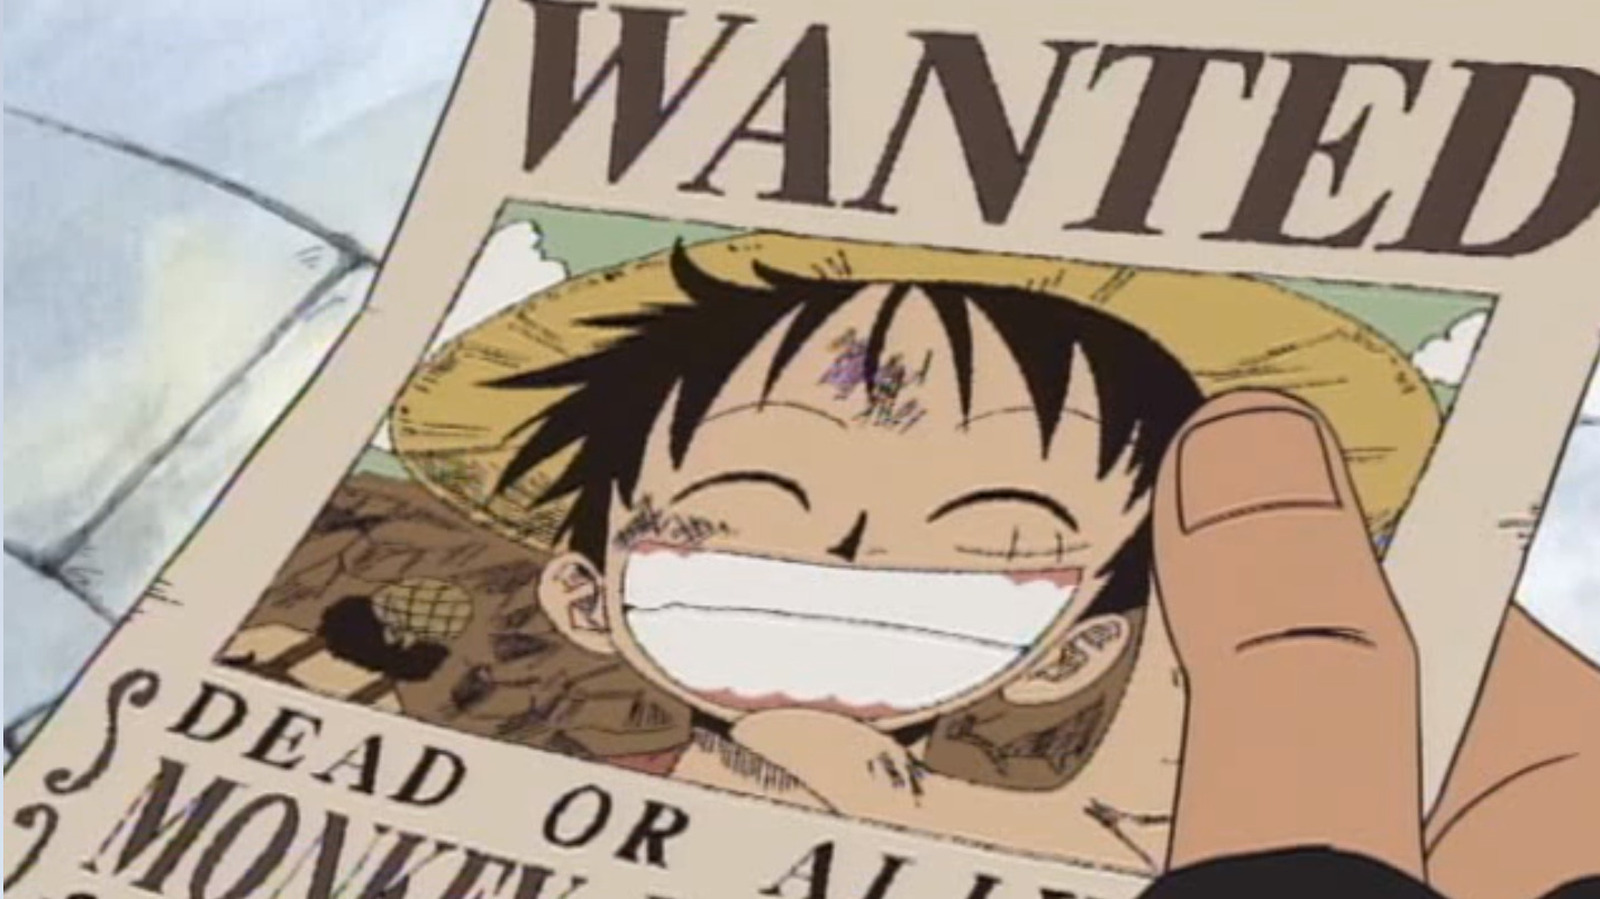 One Piece Episode 1000 (English Dub) Streams on Crunchyroll This Week